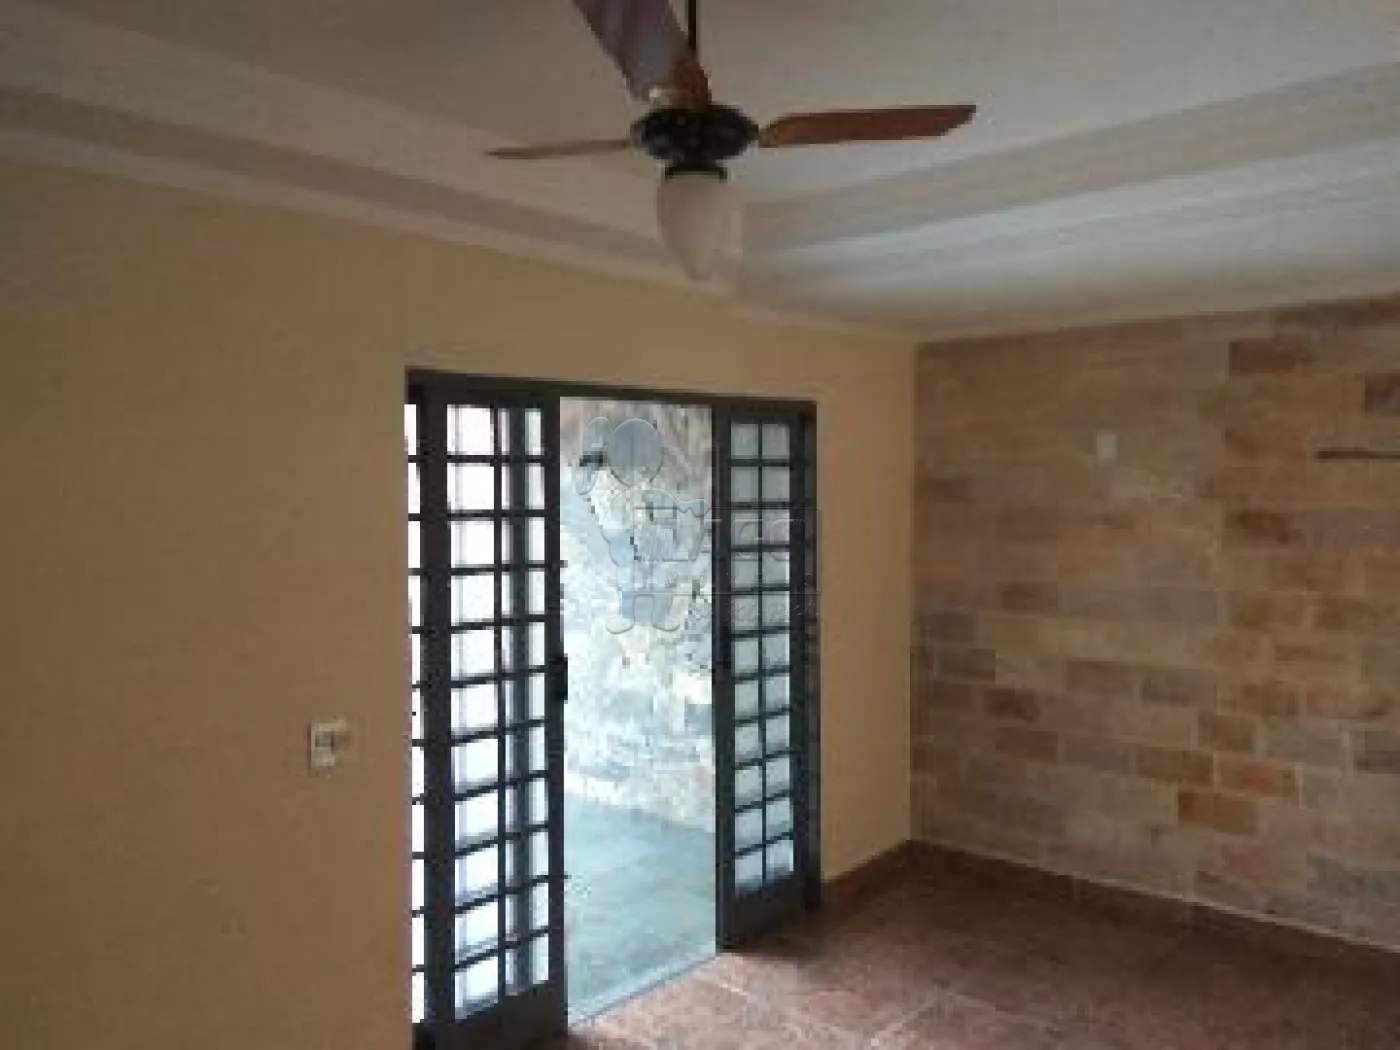 Comprar Casa / Padrão em Ribeirão Preto R$ 320.000,00 - Foto 13